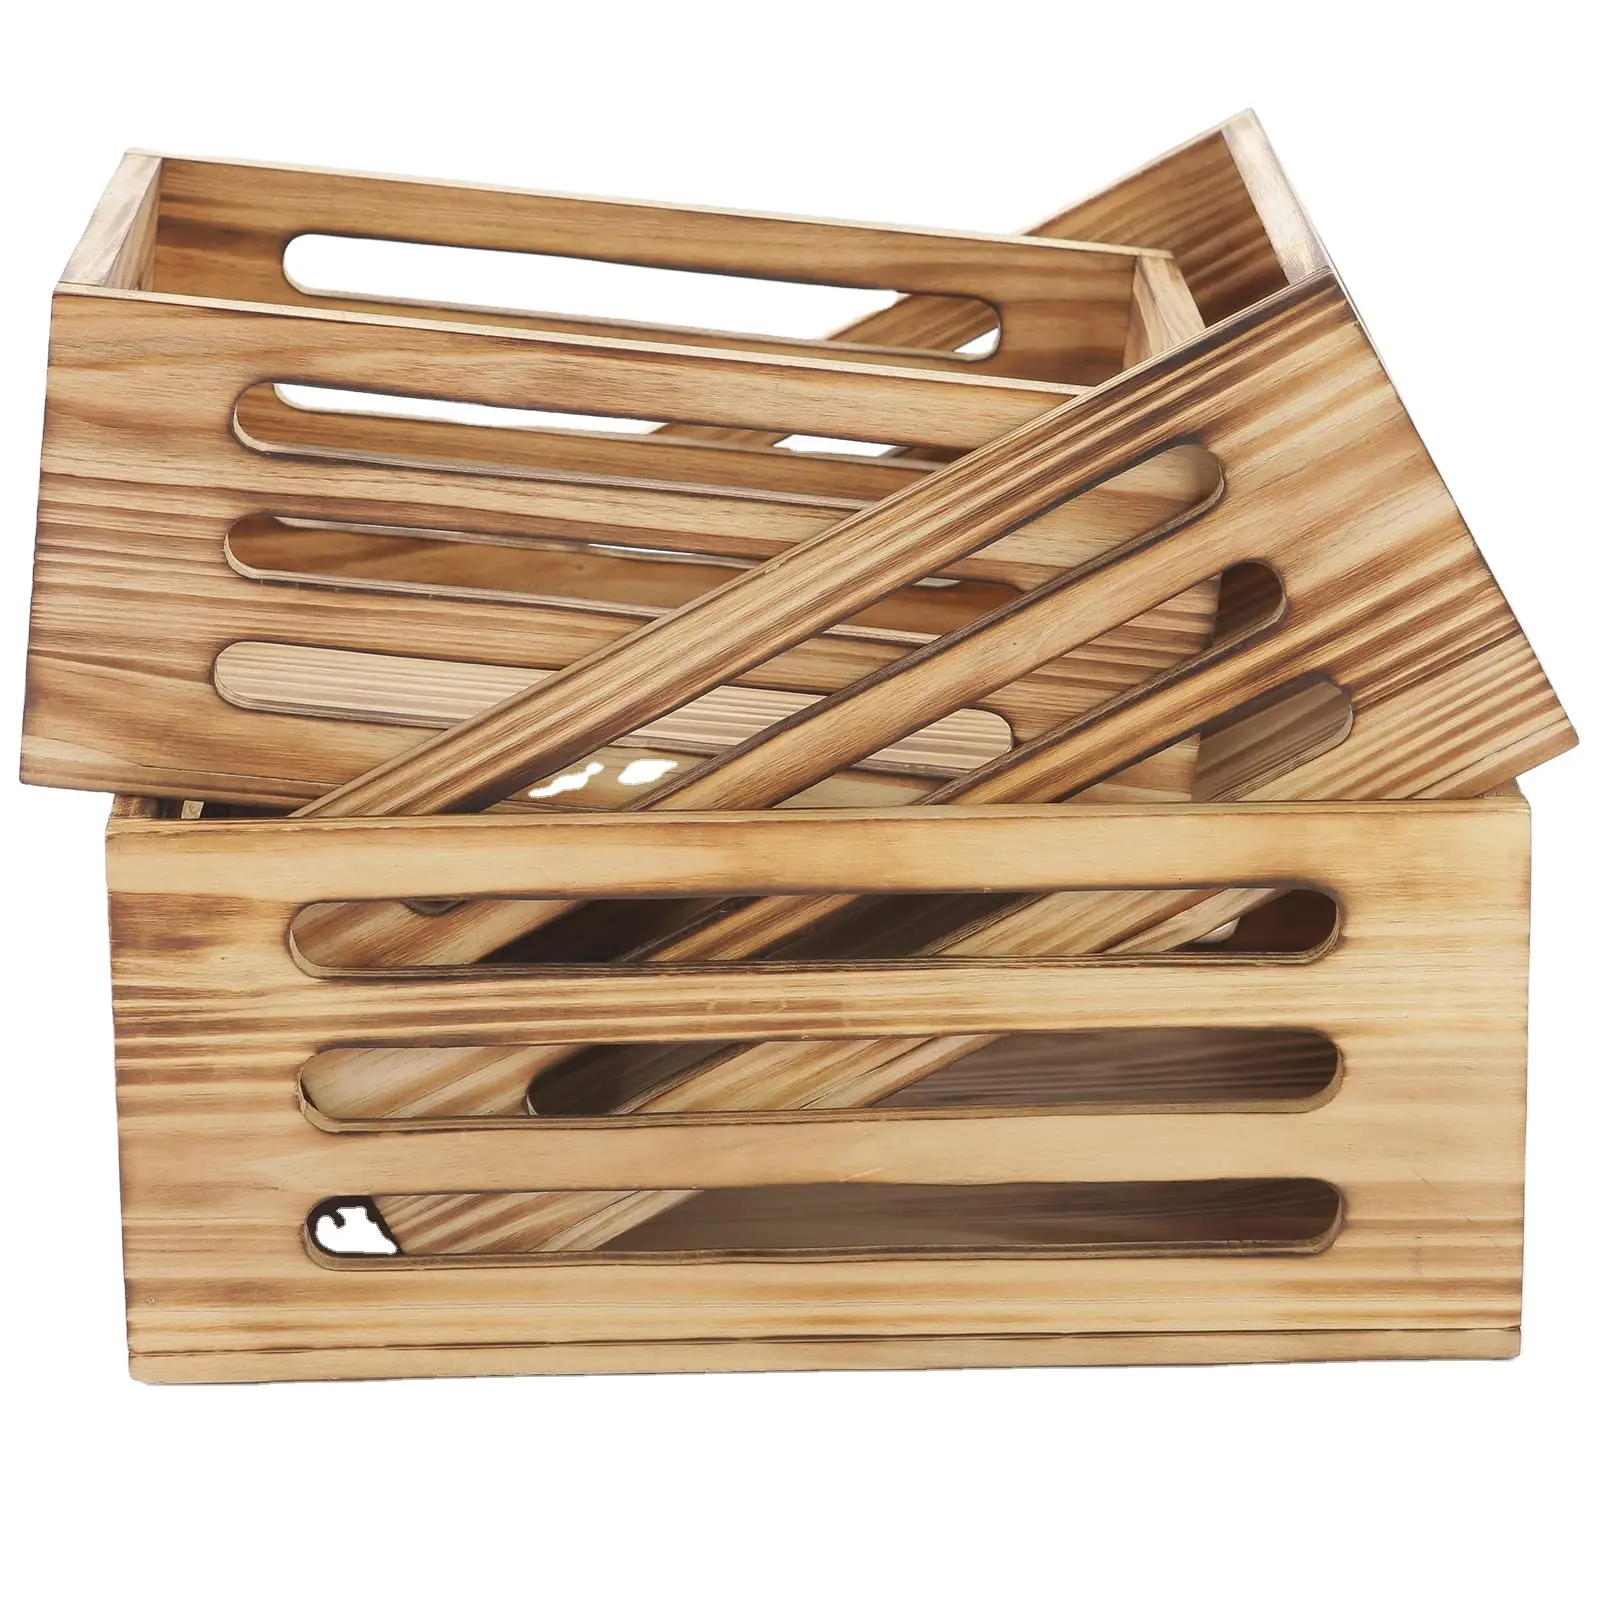 상자 바구니 보관 상자 둥지 나무 벽걸이 형 나무 저장 디스플레이 라이저 장식, 나무 상자 공예 300